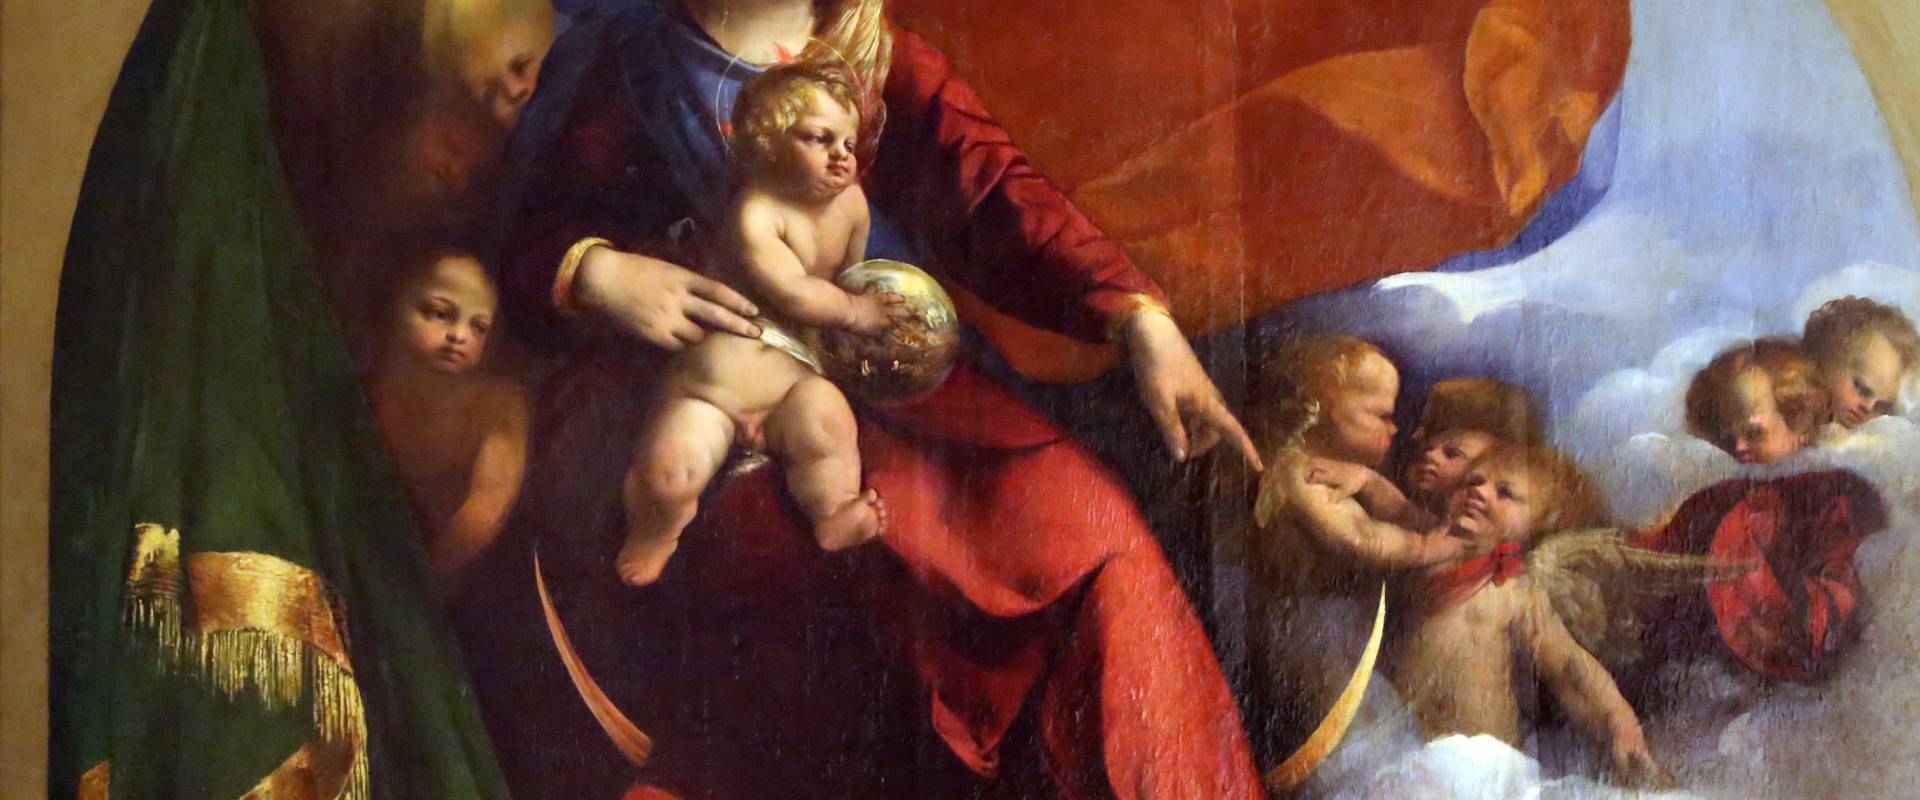 Dosso dossi, madonna col bambino tra i ss. giorgio e michele, 1518-19, 02 photo by Sailko